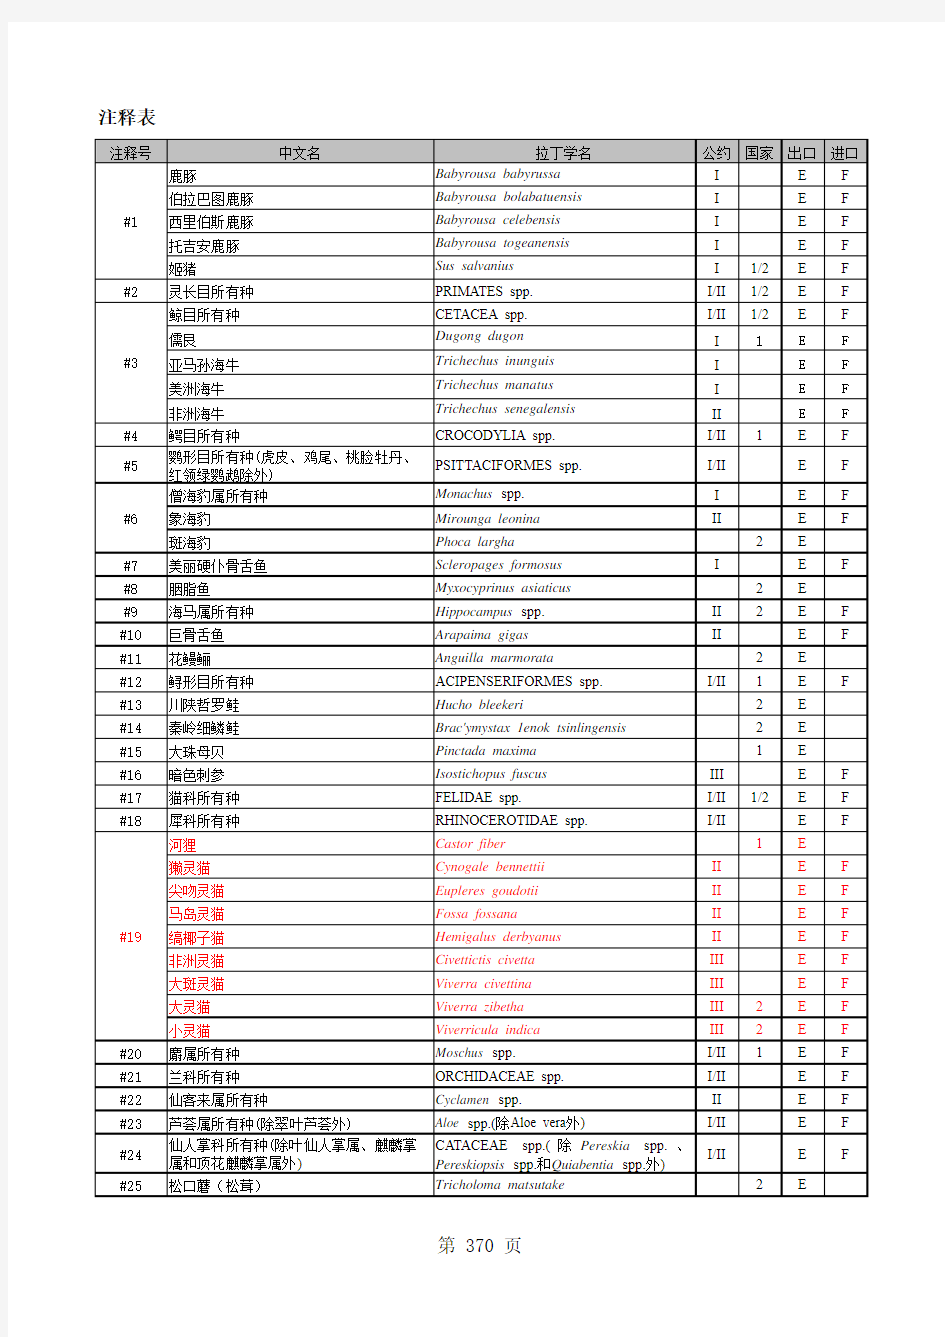 中国濒危物种名录-2015物种注释表-进出口(最新)